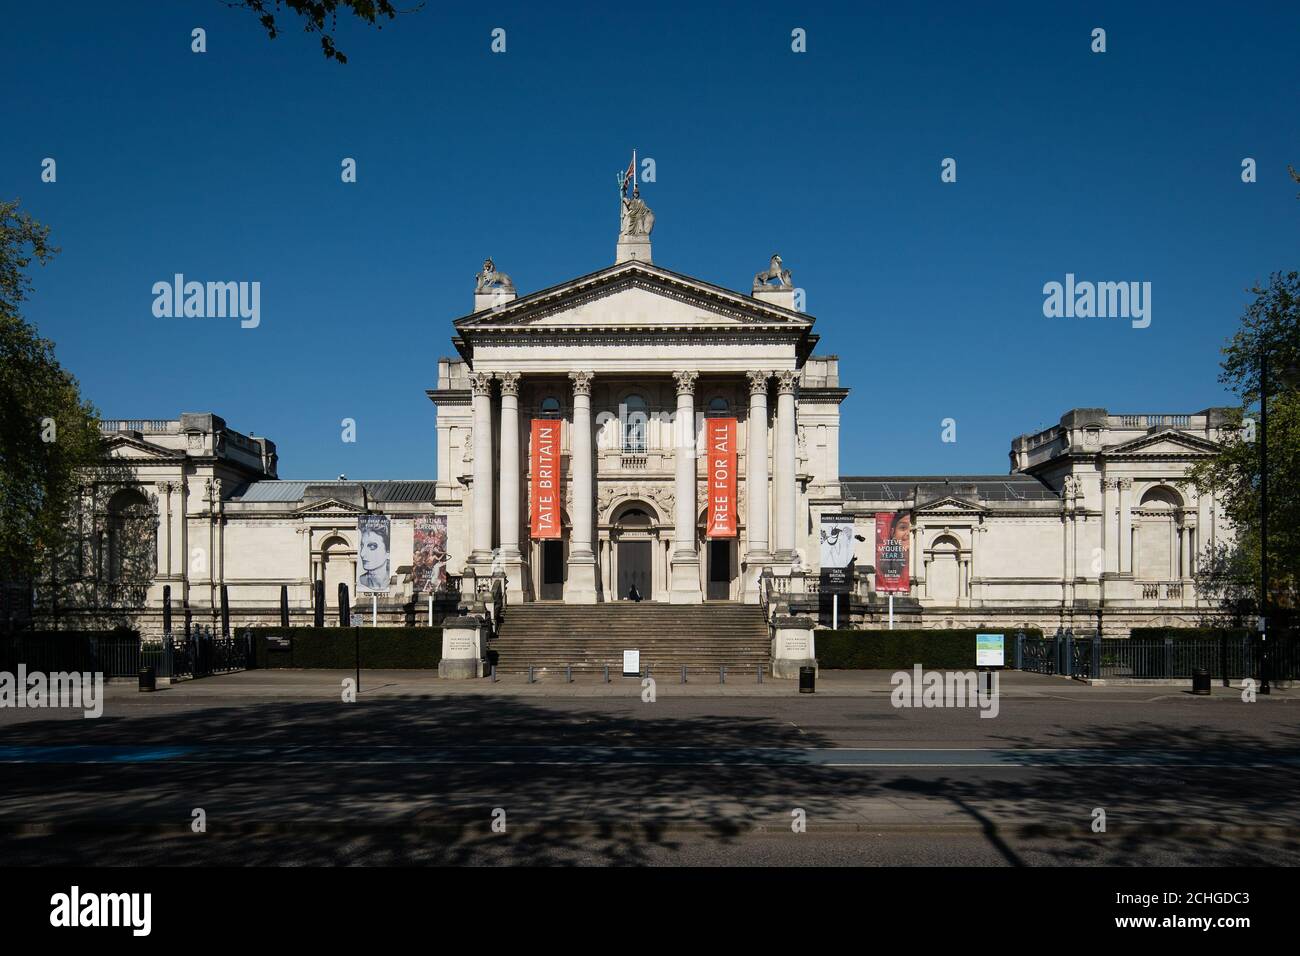 Ein Blick auf die Tate Britain in London, da Großbritannien weiterhin im Lockdown ist, um die Ausbreitung des Coronavirus einzudämmen. Stockfoto